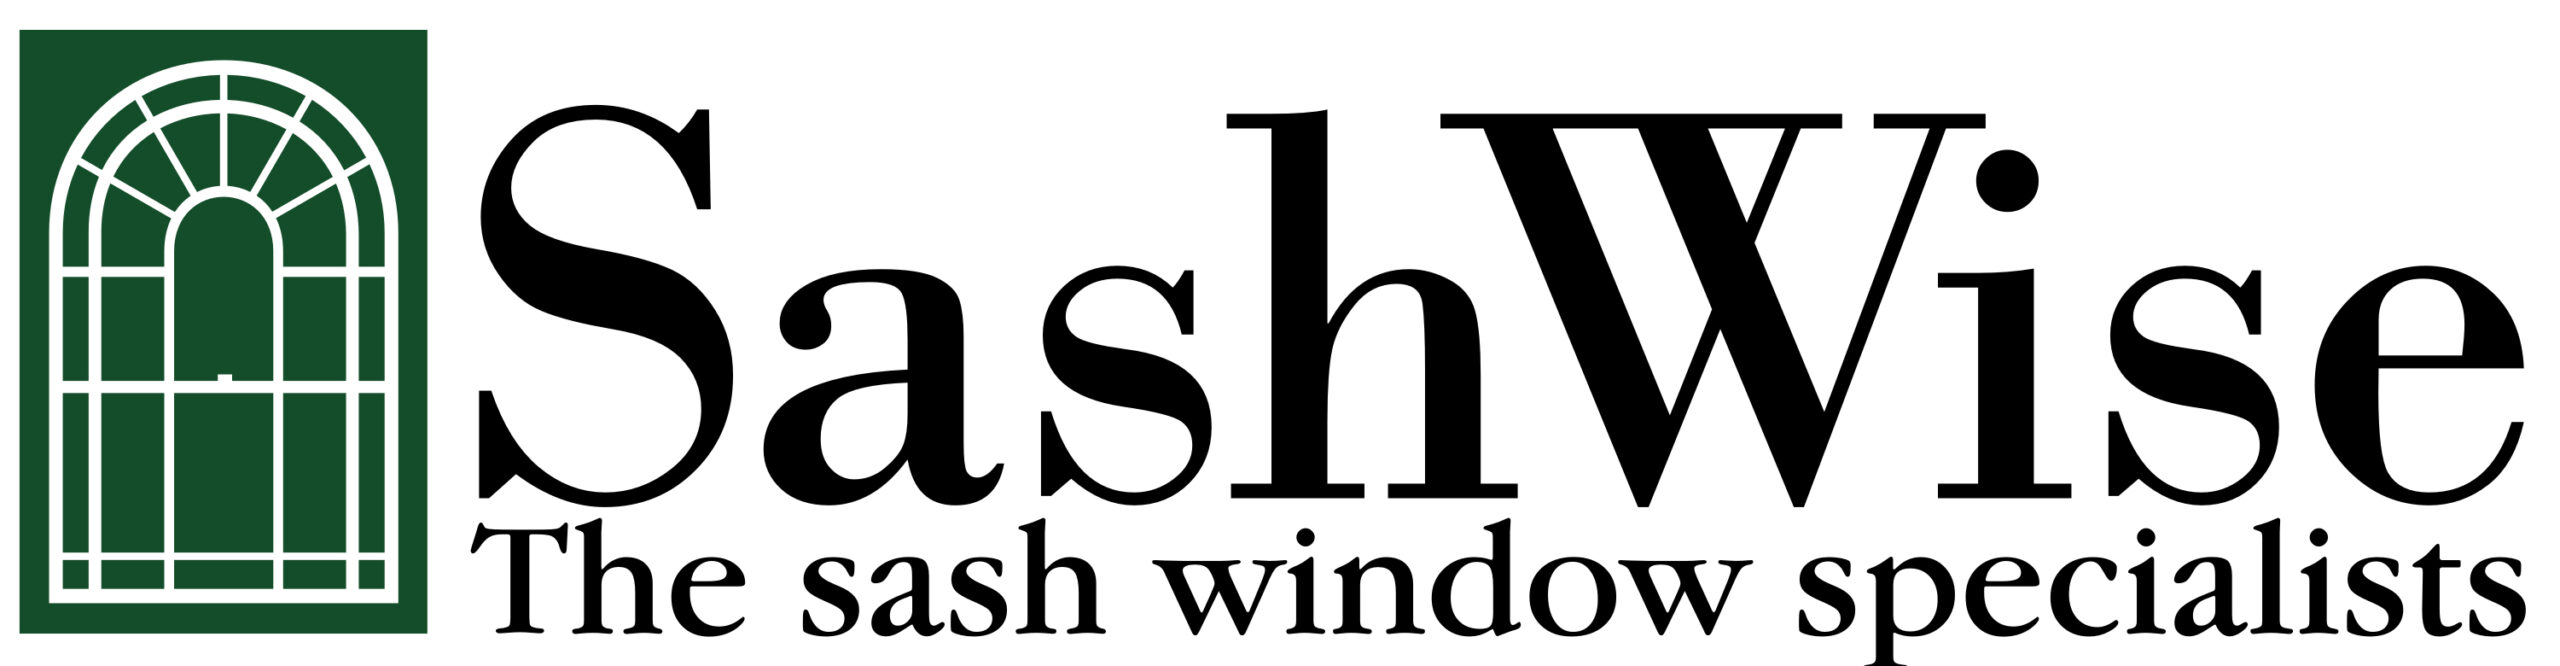 Sashwise logo